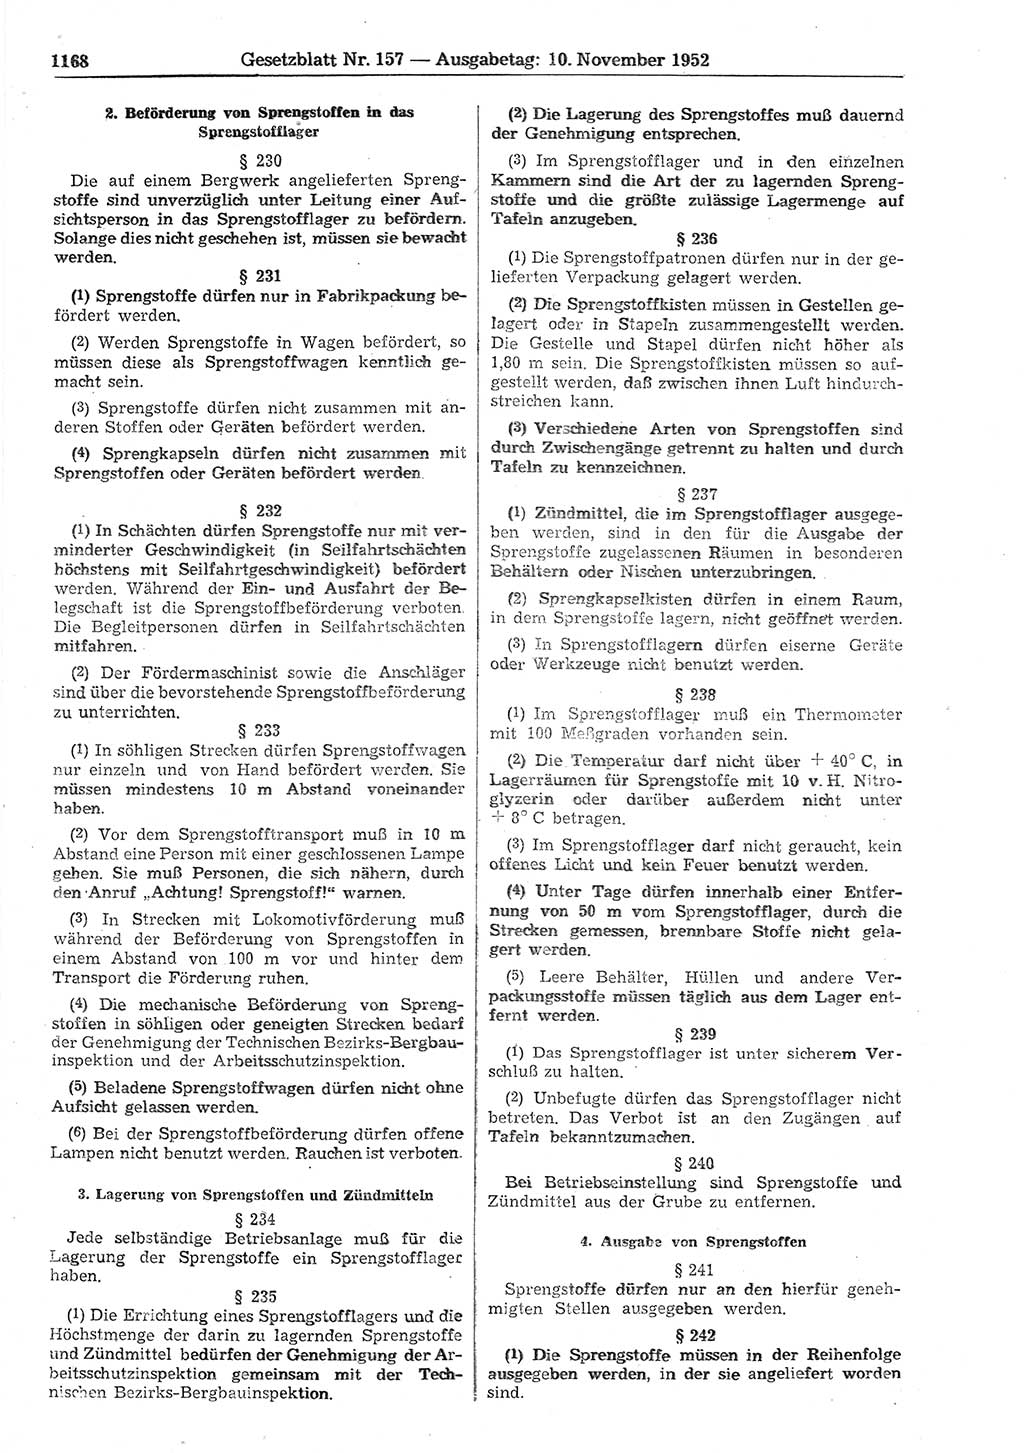 Gesetzblatt (GBl.) der Deutschen Demokratischen Republik (DDR) 1952, Seite 1168 (GBl. DDR 1952, S. 1168)